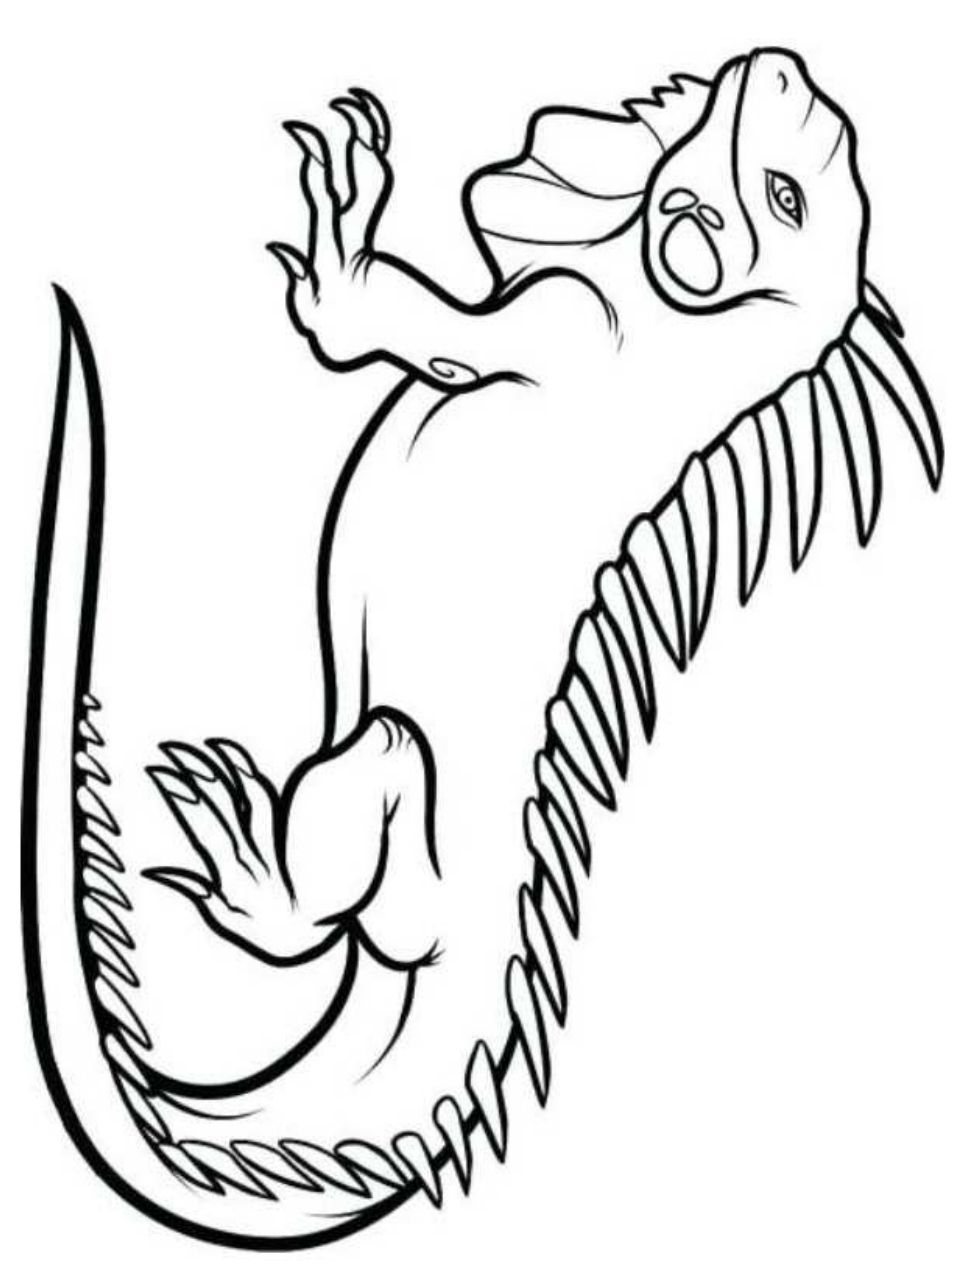 Desenho 7 de iguanas para imprimir e colorir